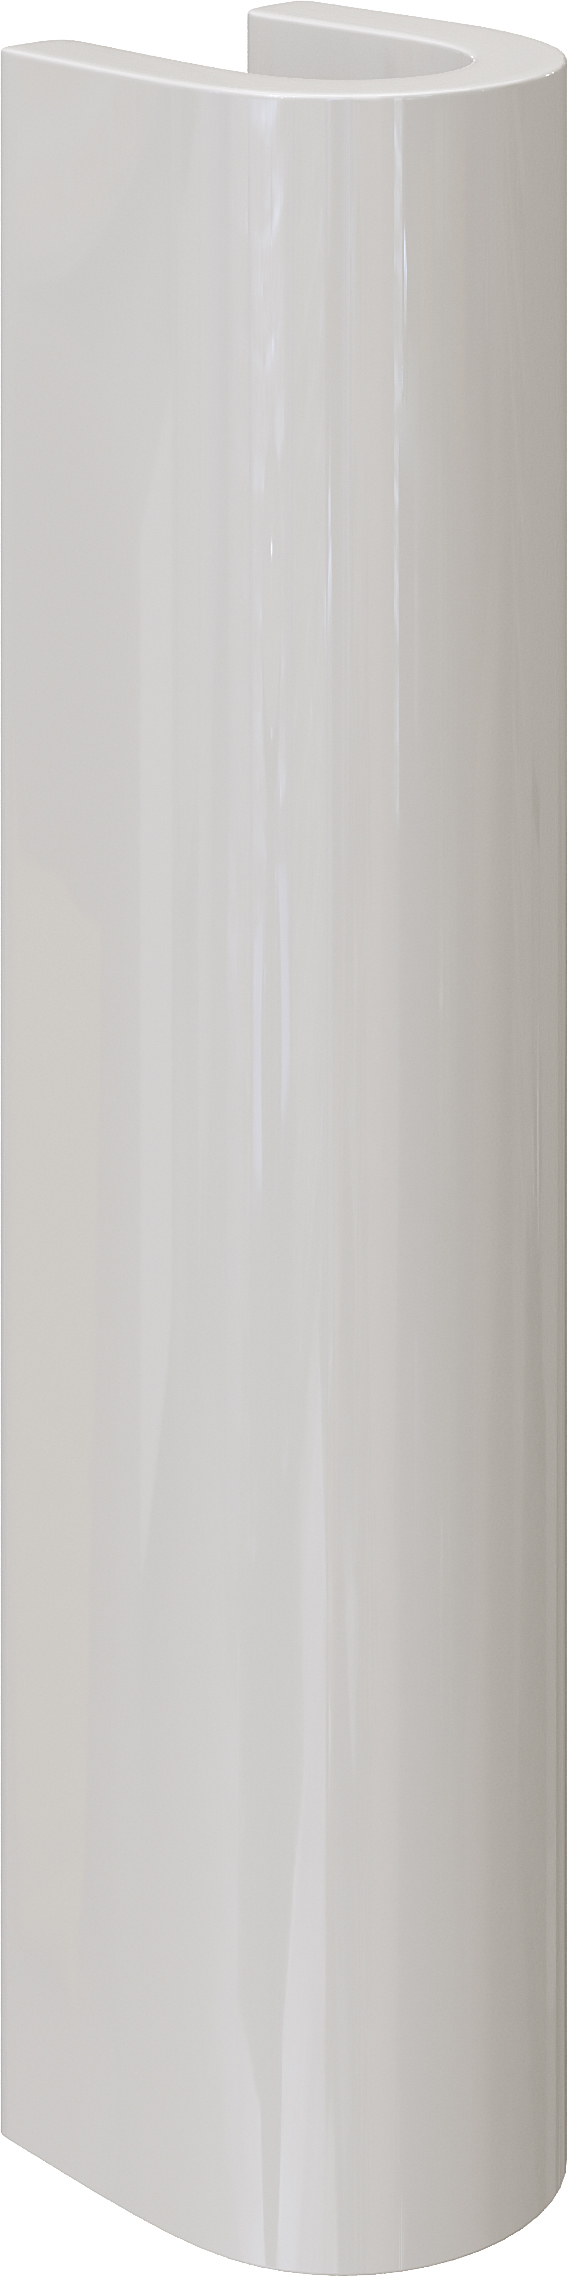 Комплект  Раковина DIWO Псков 0100 угловая + Зеркало DIWO Псков 40 с подсветкой + Сифон для раковины Wirquin Минор с отводом для стиральной машины + П 550542 - 9